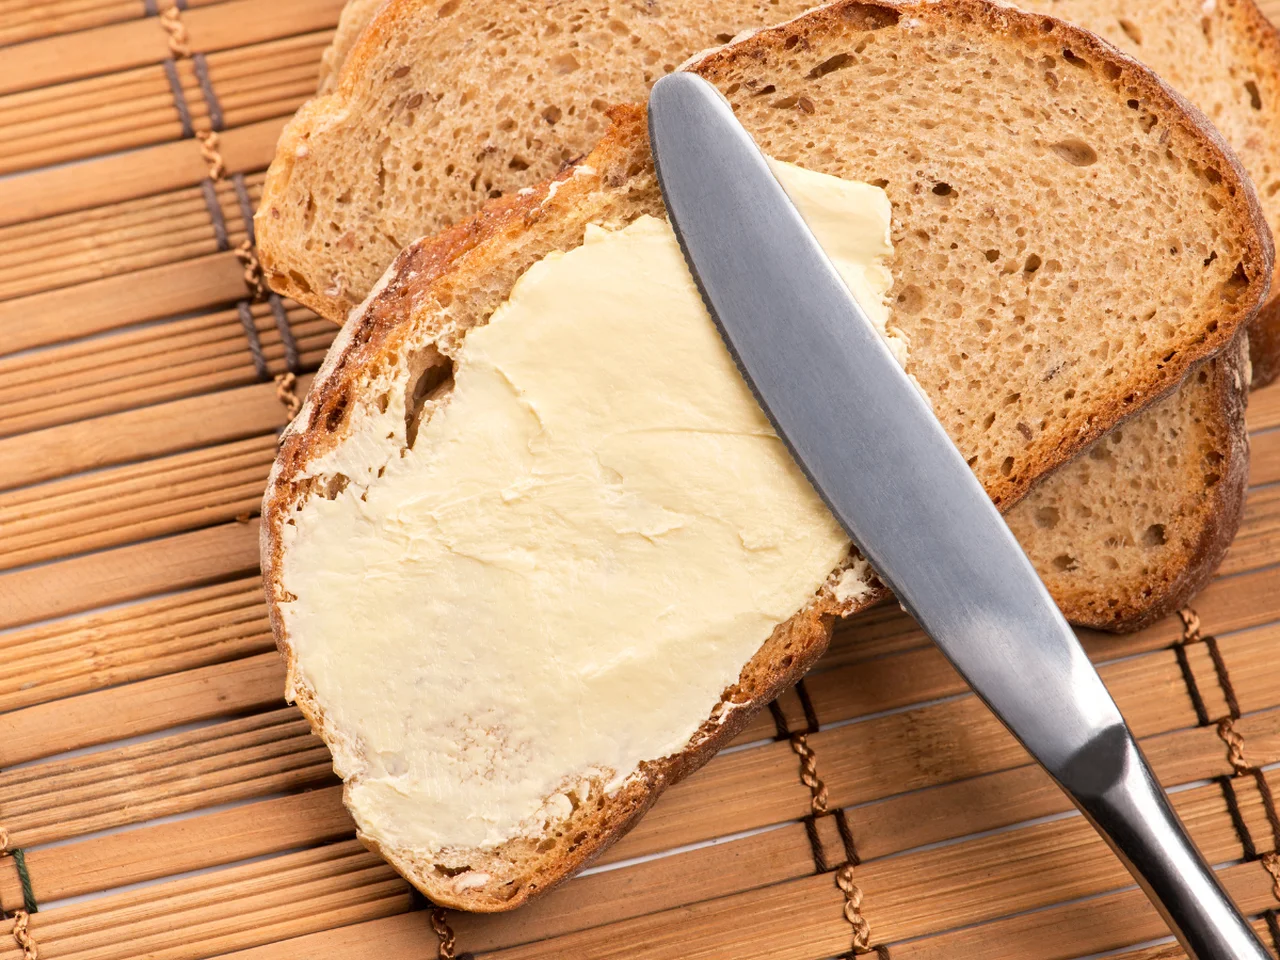 Popularna margaryna próbuje udawać masło? Perfidne sztuczki producentów